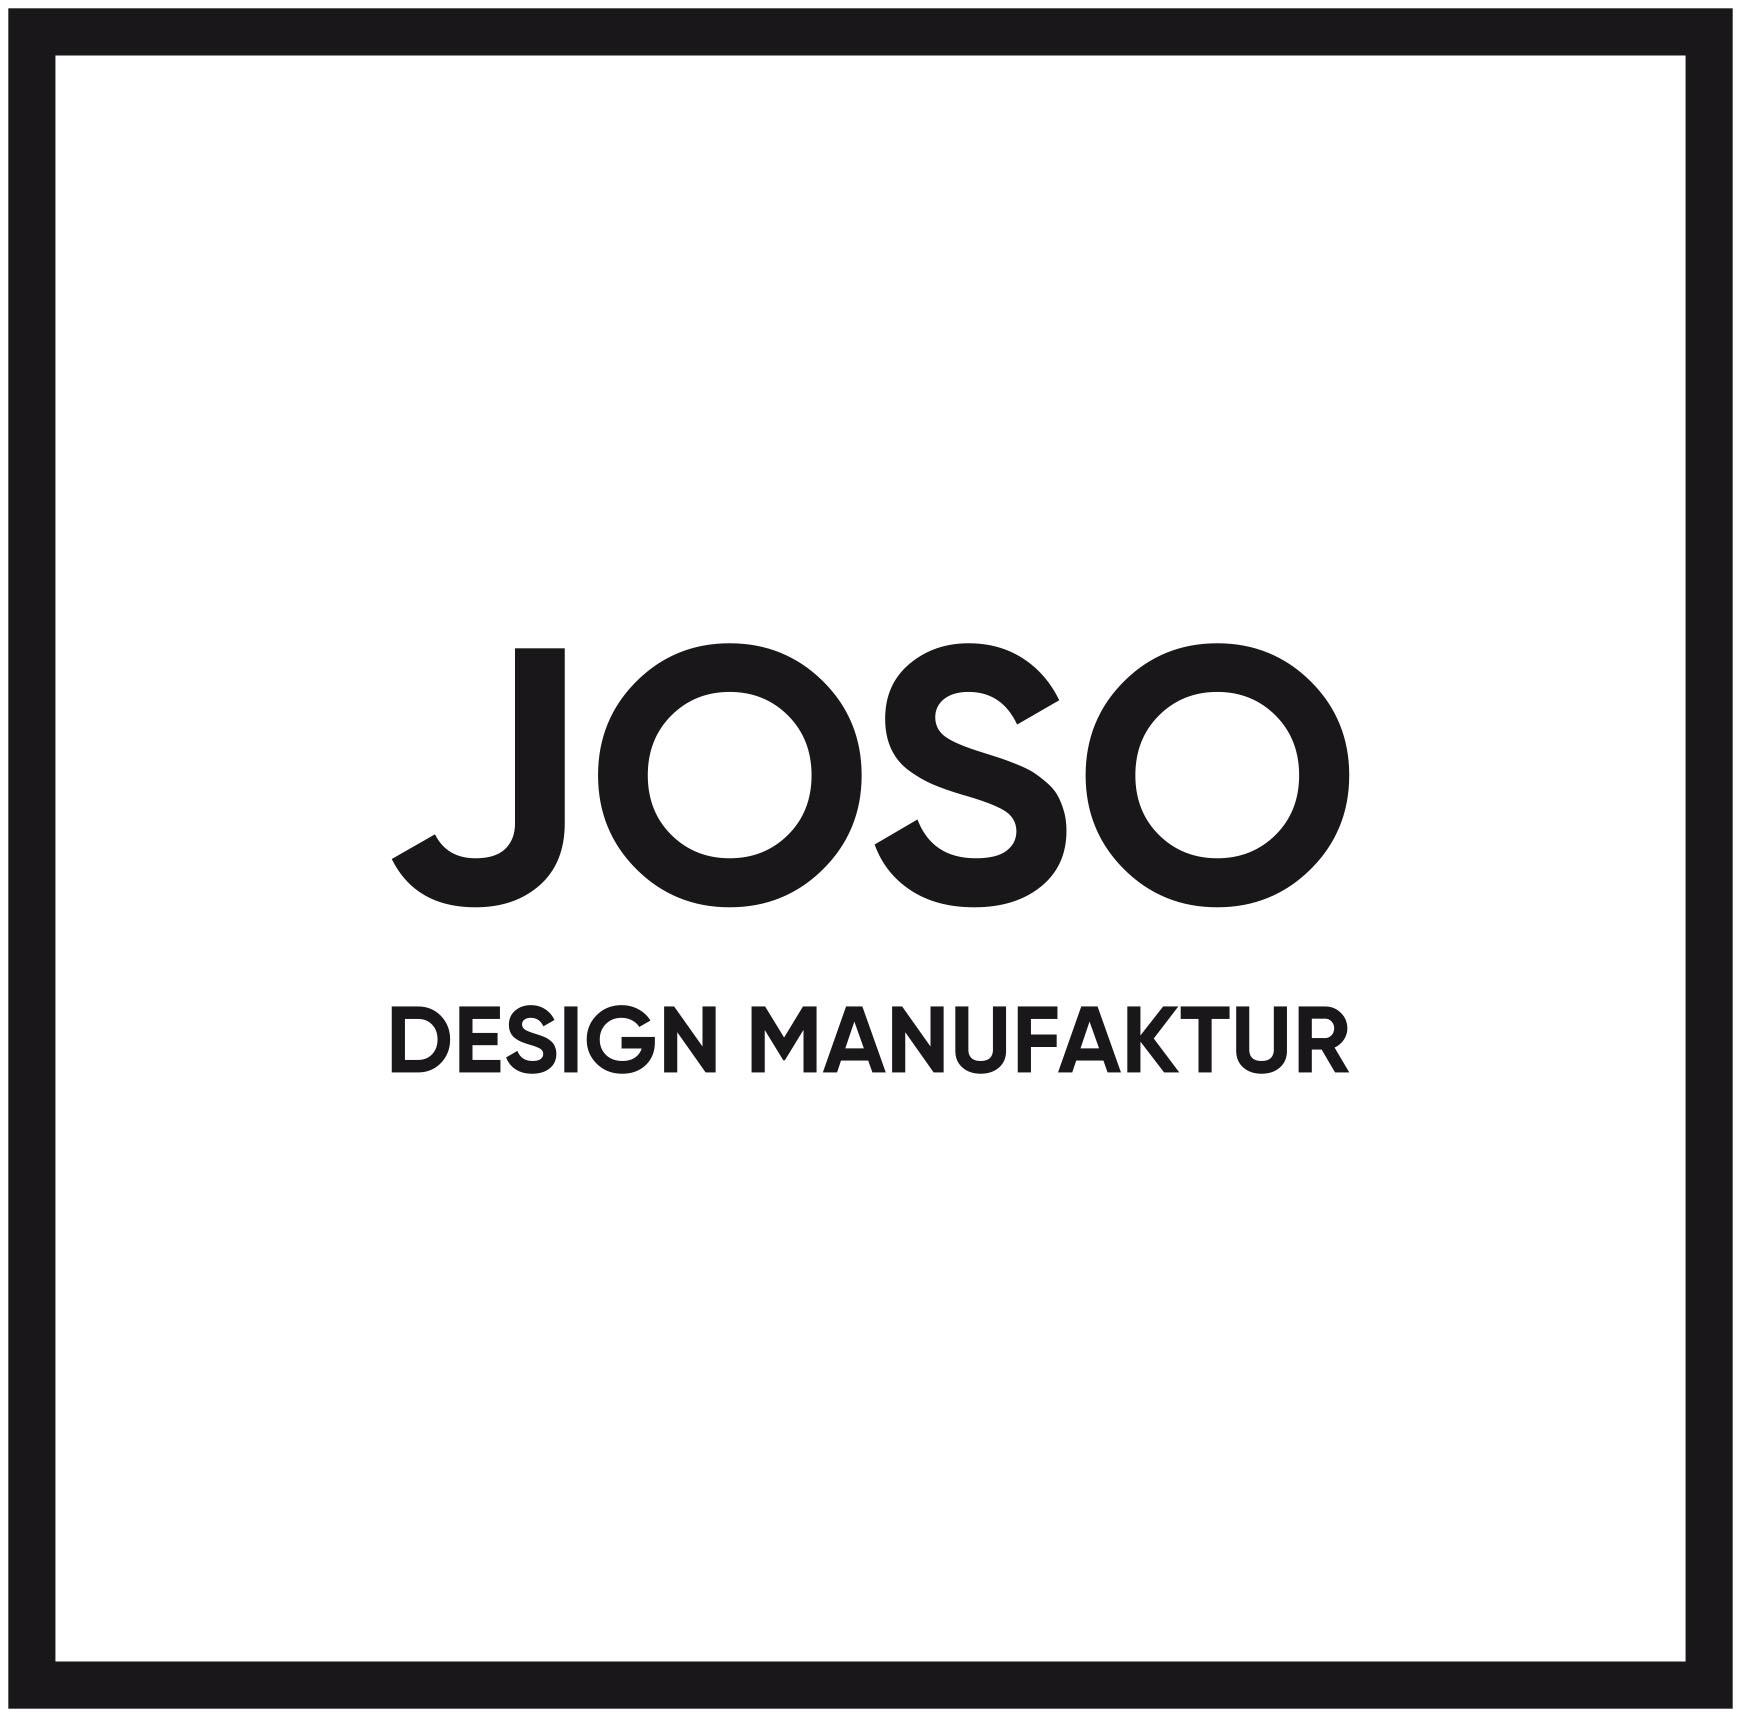 JOSO Design